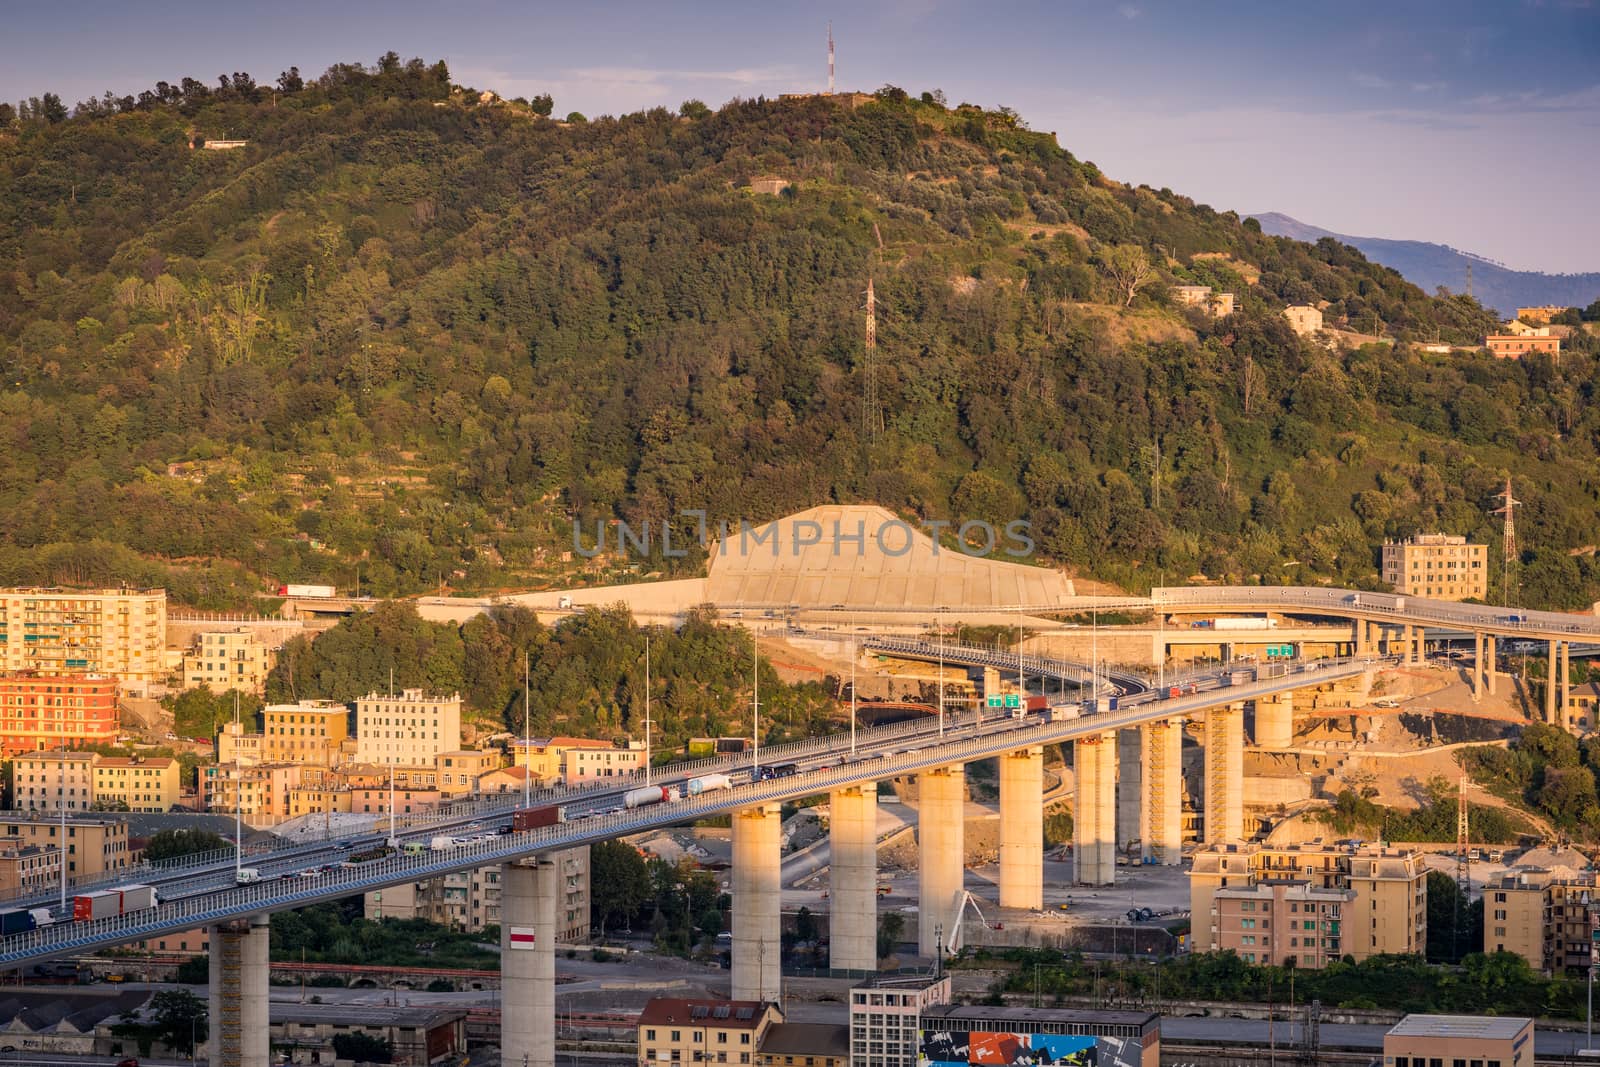 The new San Giorgio bridge in Genoa, Italy. by maramade